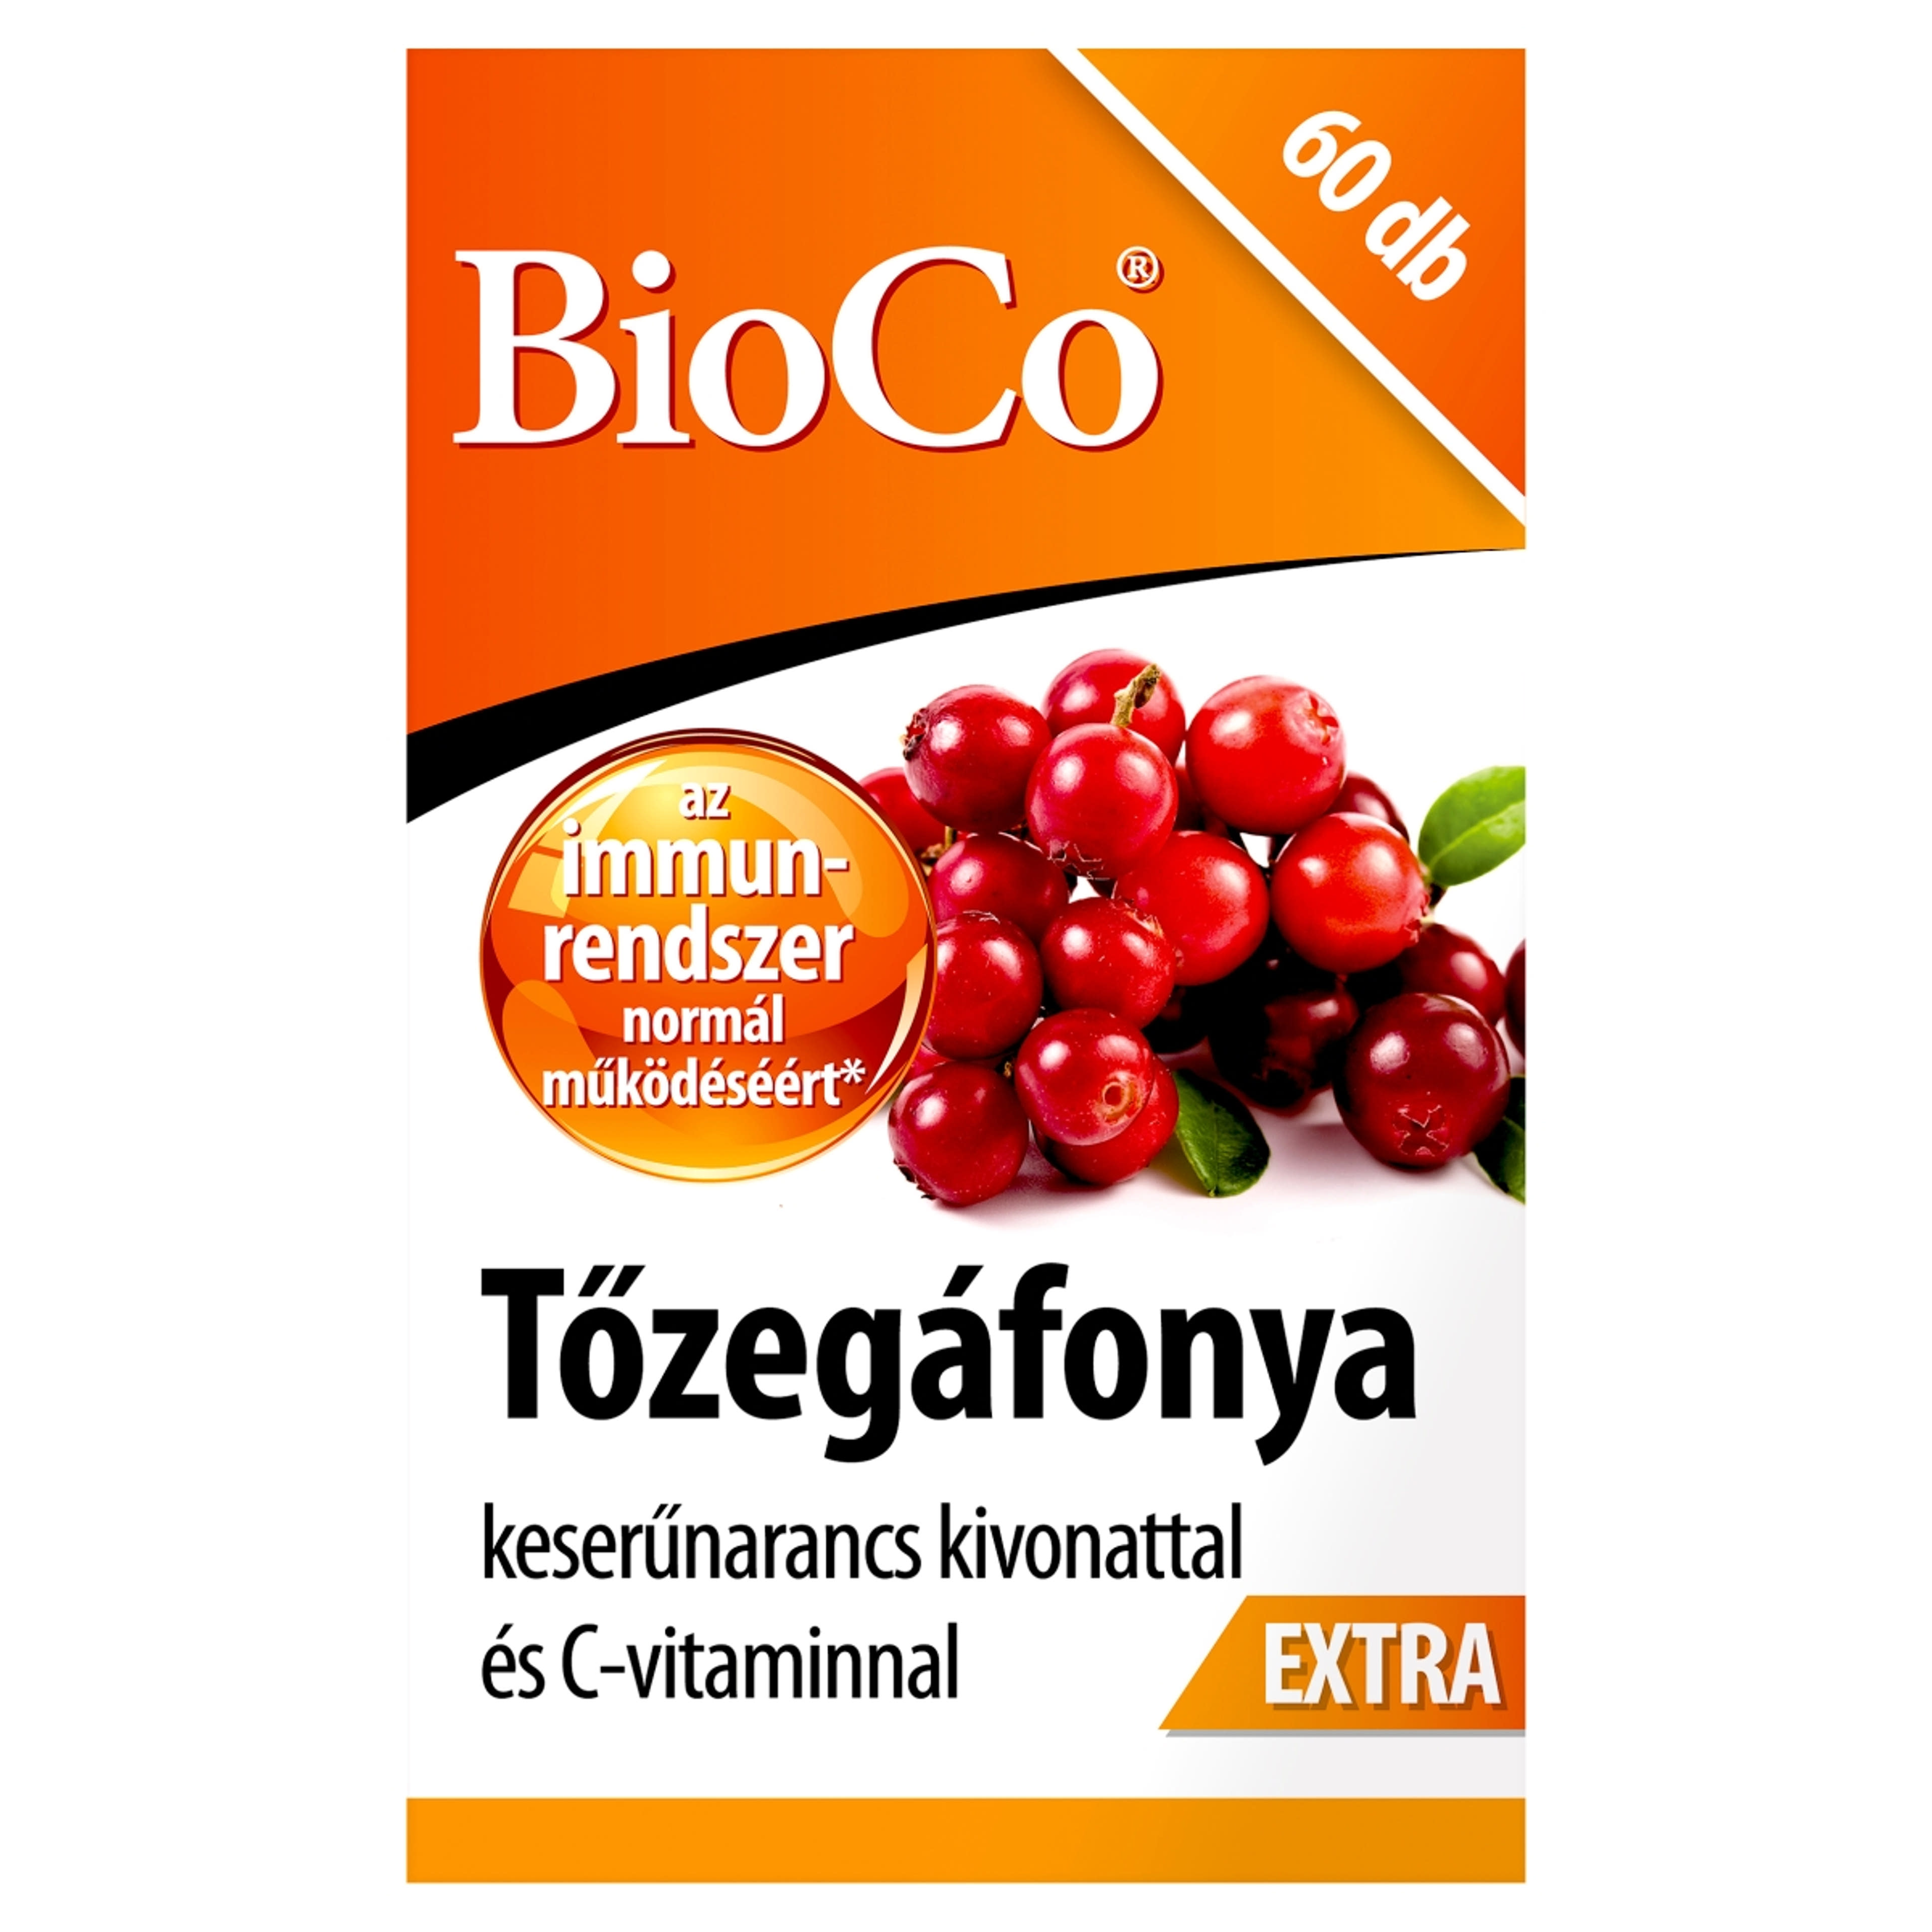 Bioco tőzegáfonya extra étrendkiegészítő tabletta - 60 db-1